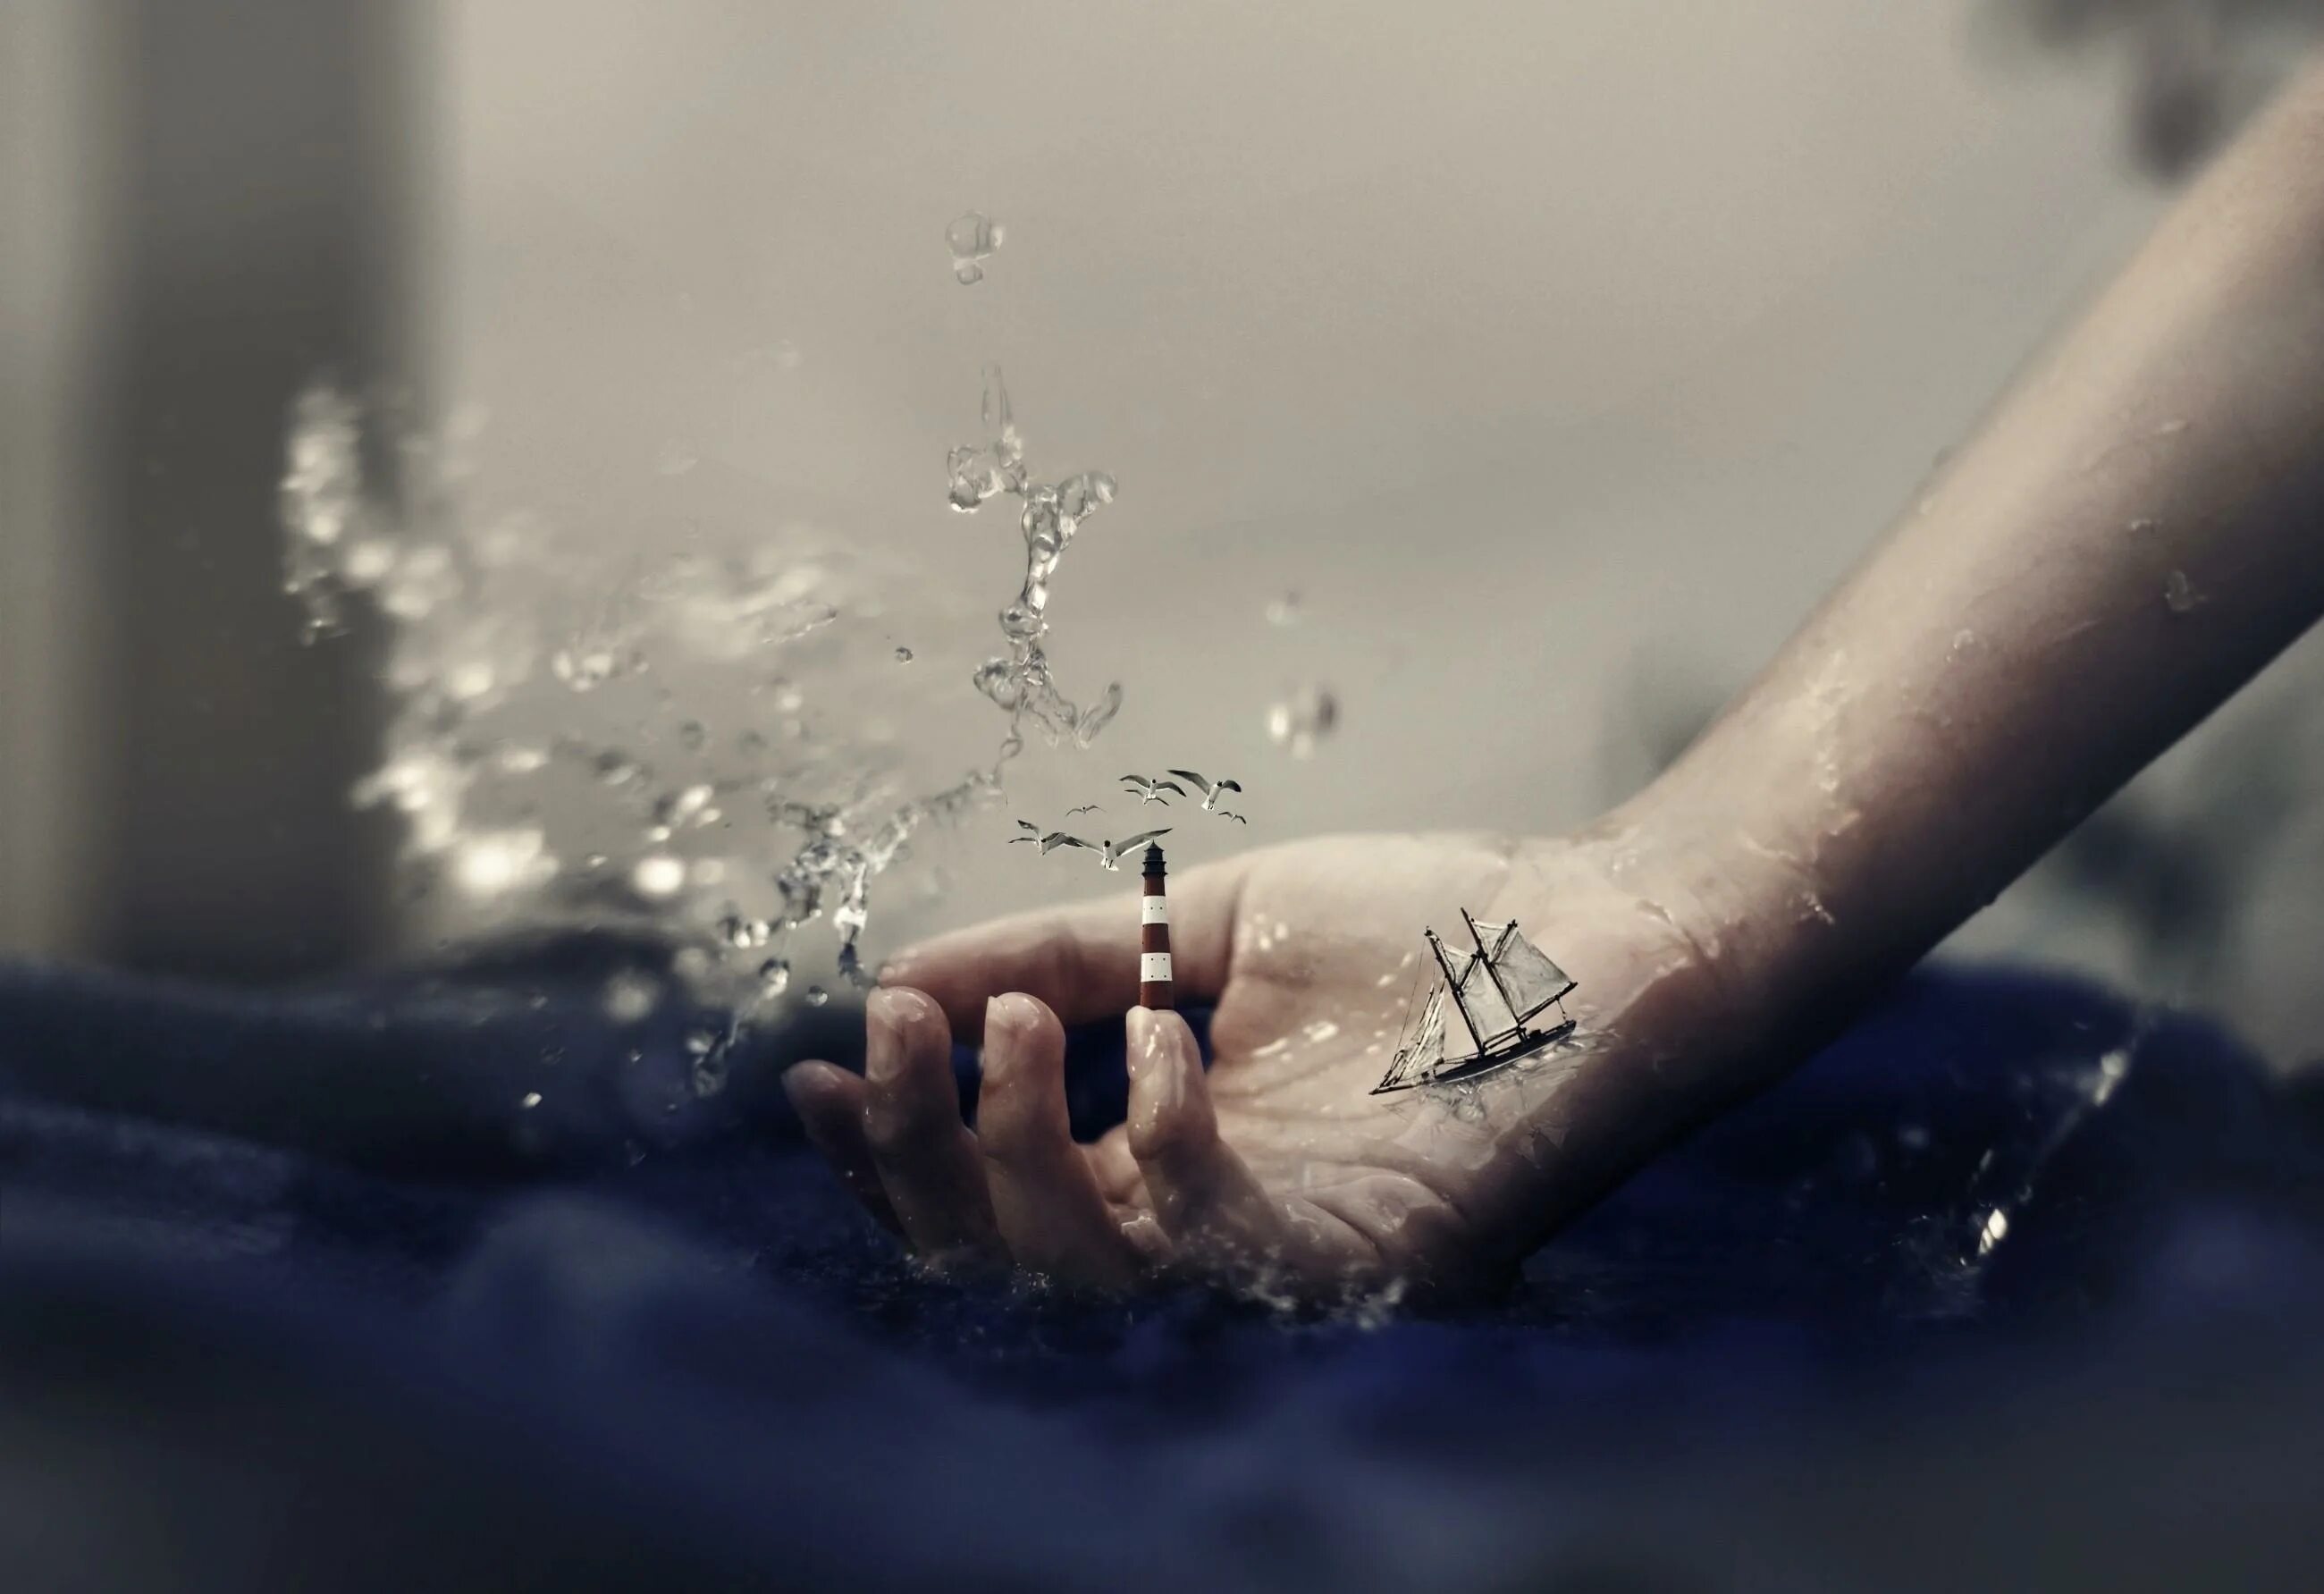 Чувства Эстетика. Эстетика жизни. Руки в воде Эстетика. Магия воды в руках.